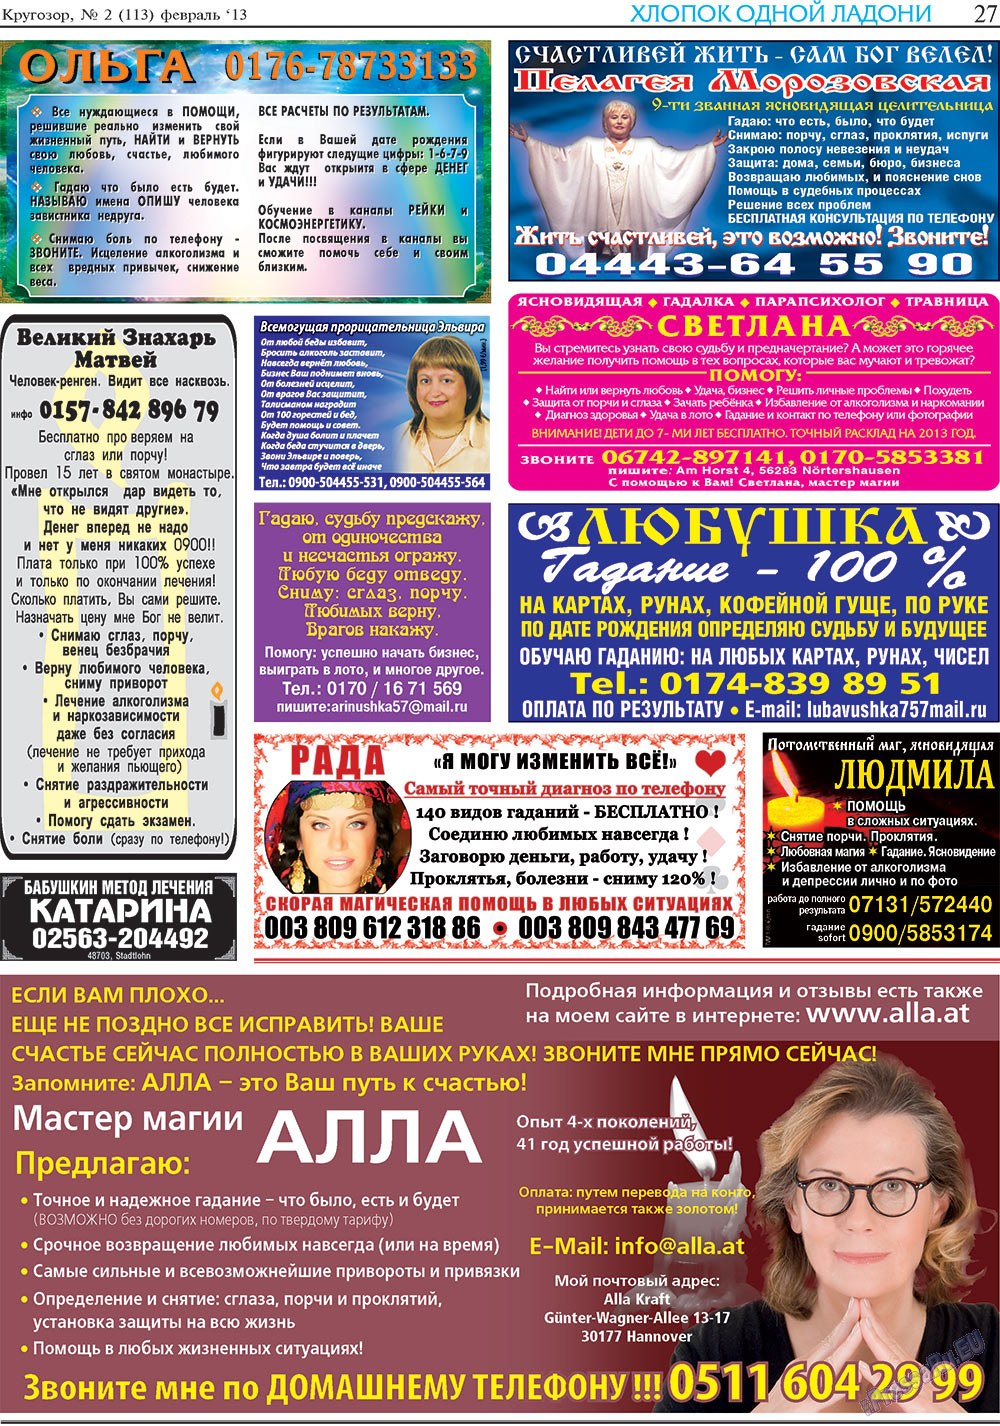 Кругозор, газета. 2013 №2 стр.27